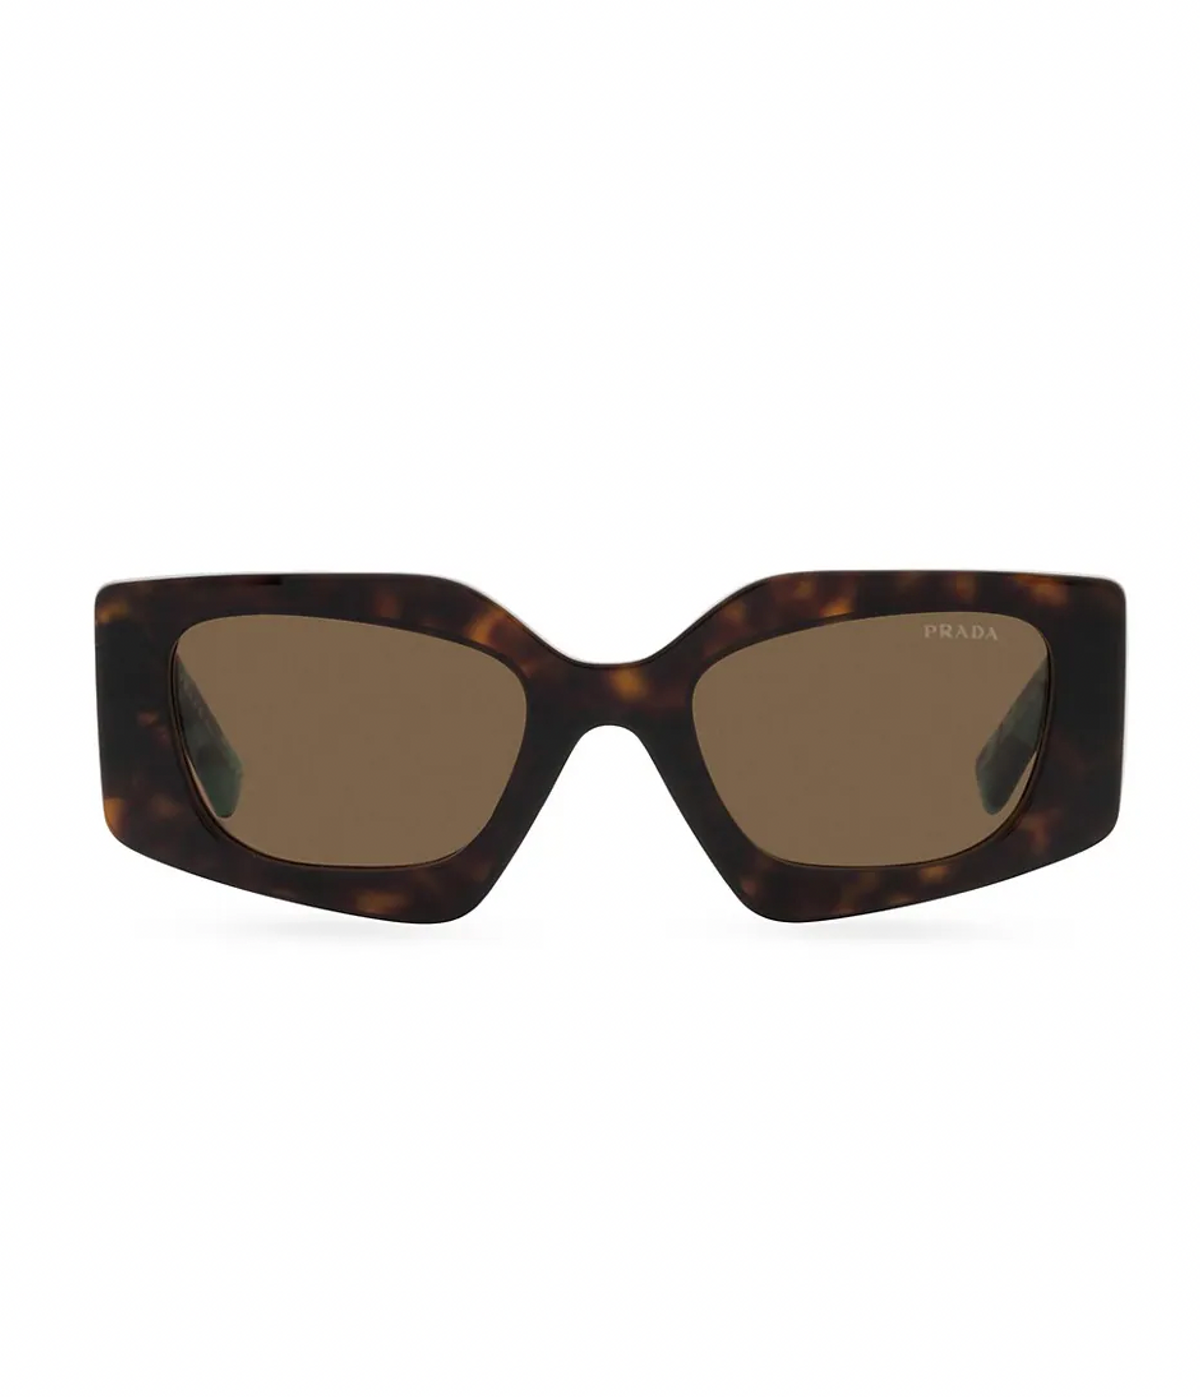 52MM Tortoiseshell Rectangular Sunglasses